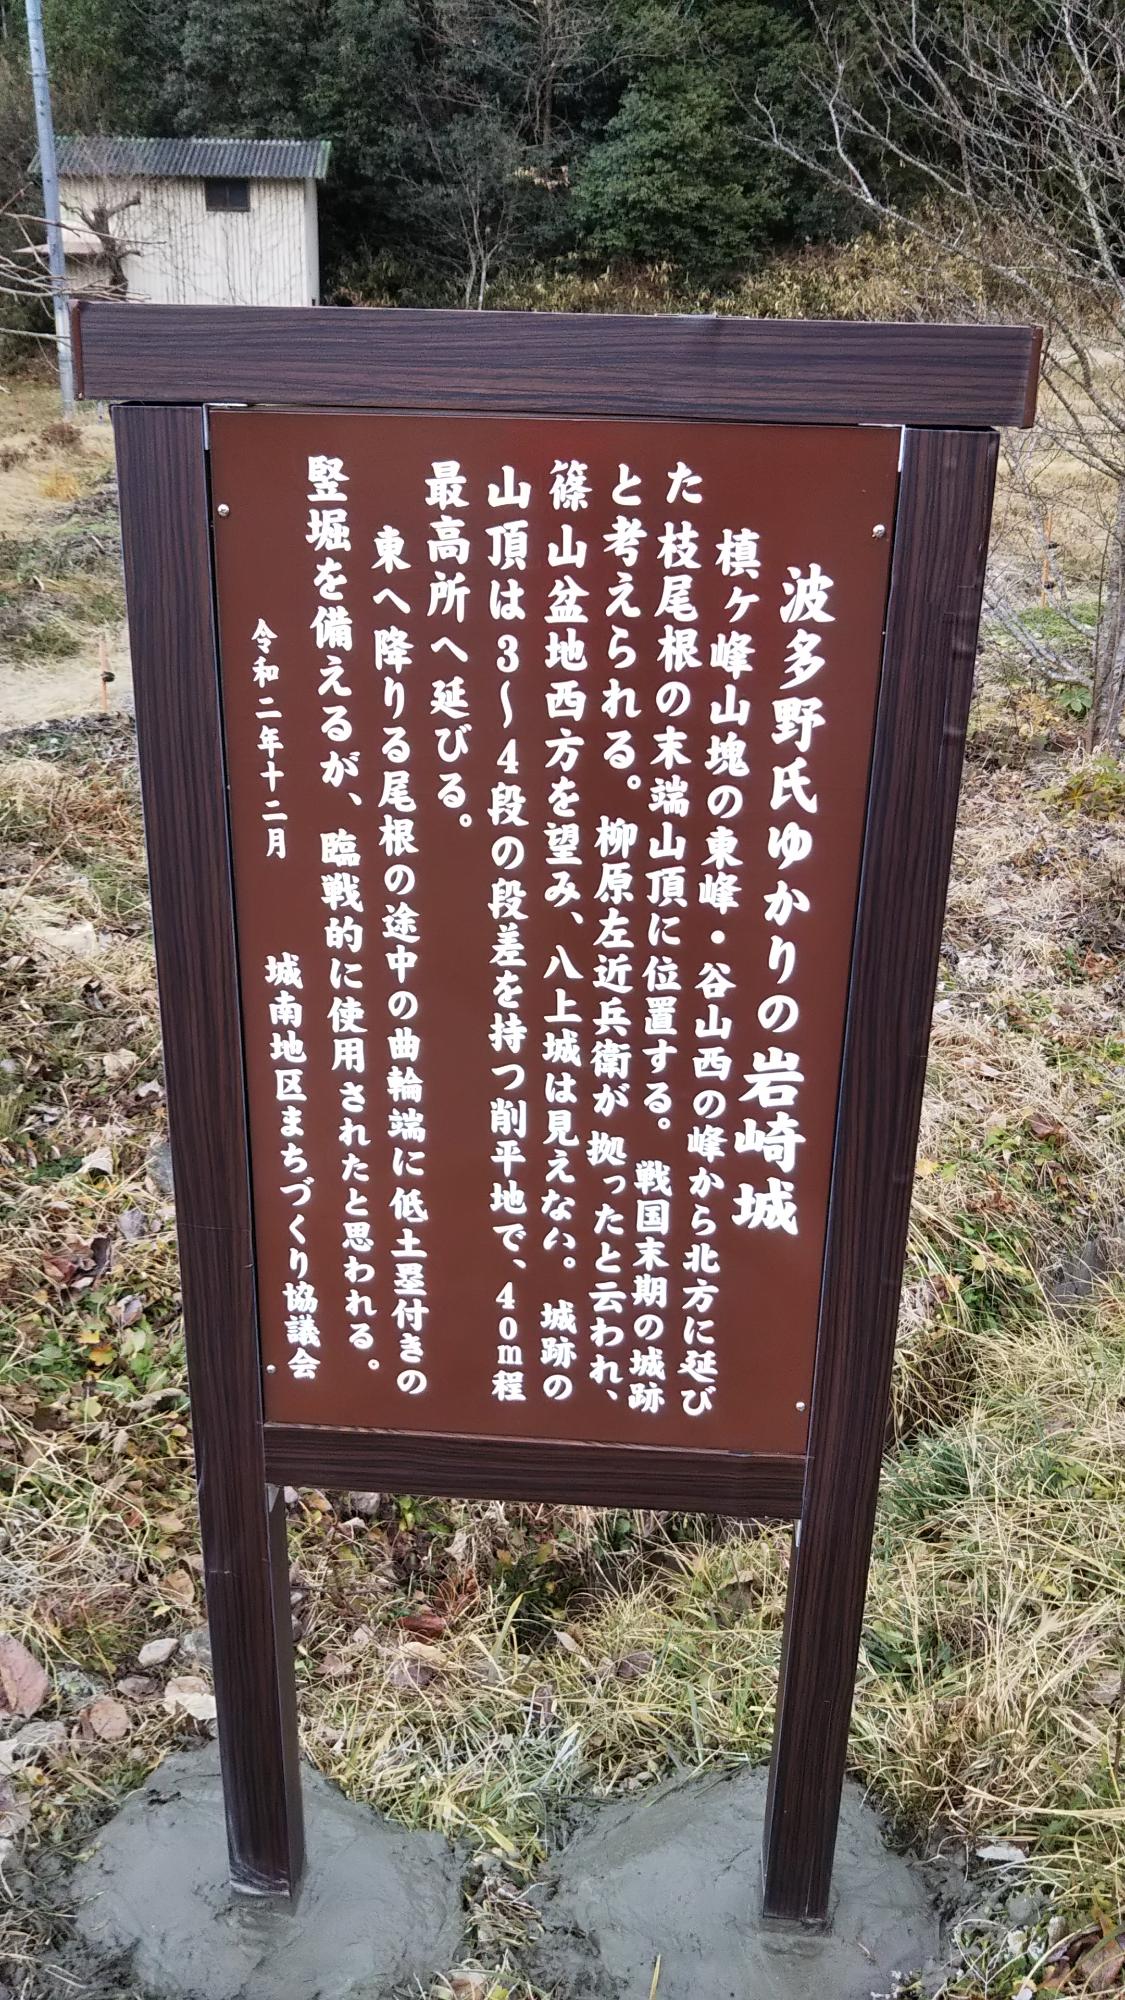 岩崎城のいわれがかいていある看板。